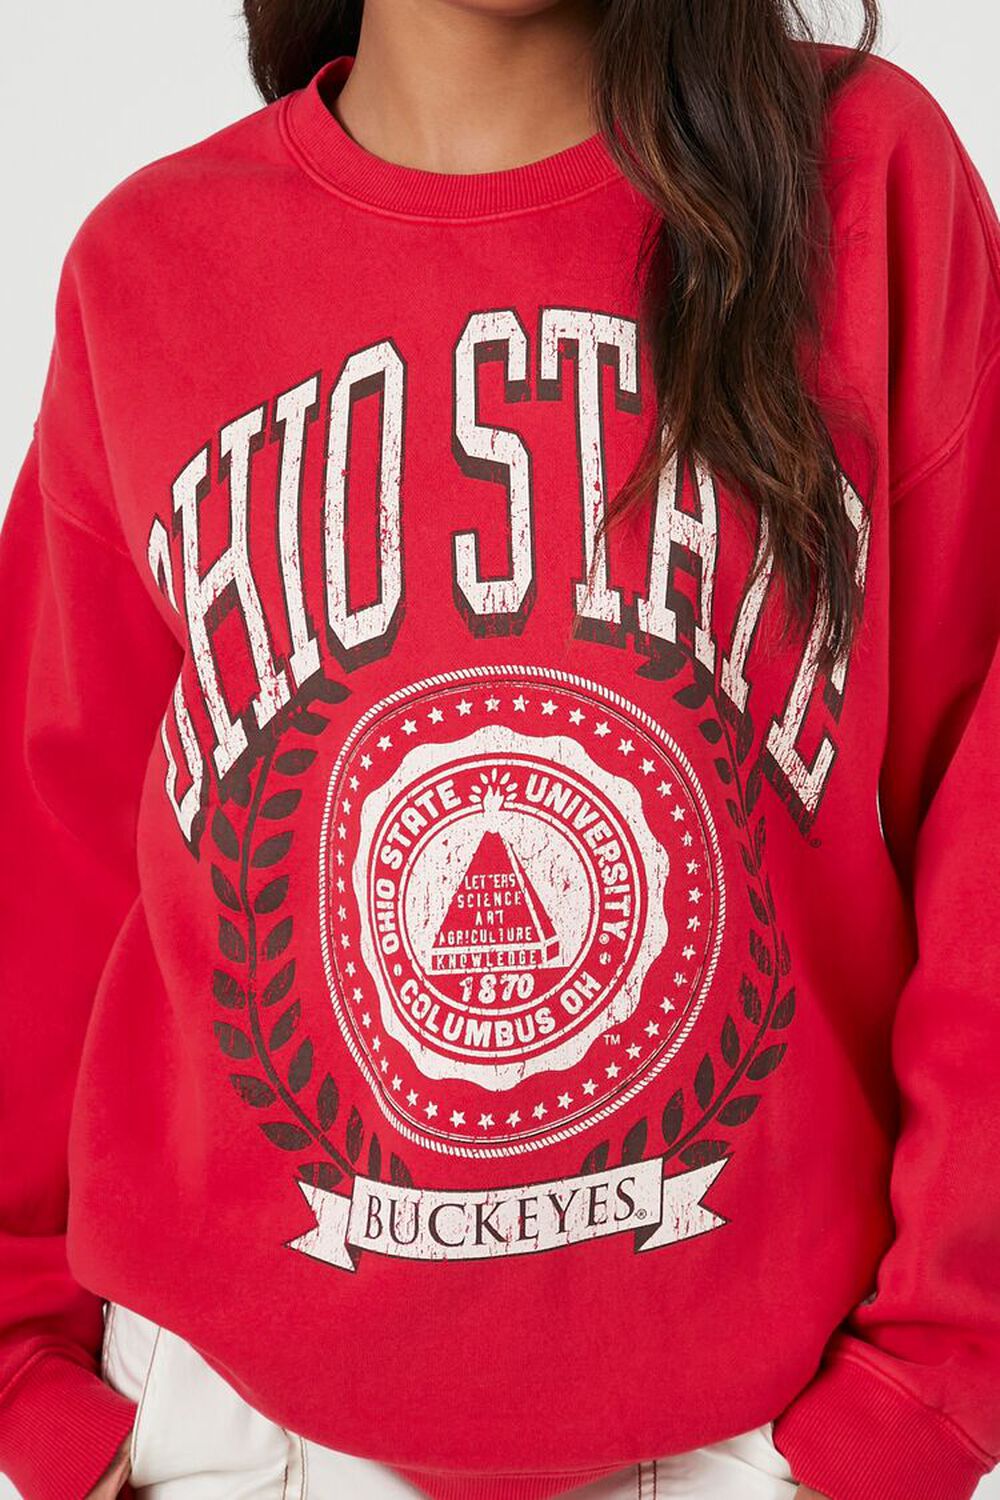 Ohio Sweatshirt, Ohio State Flower, Ohio Shirt, Ohio State